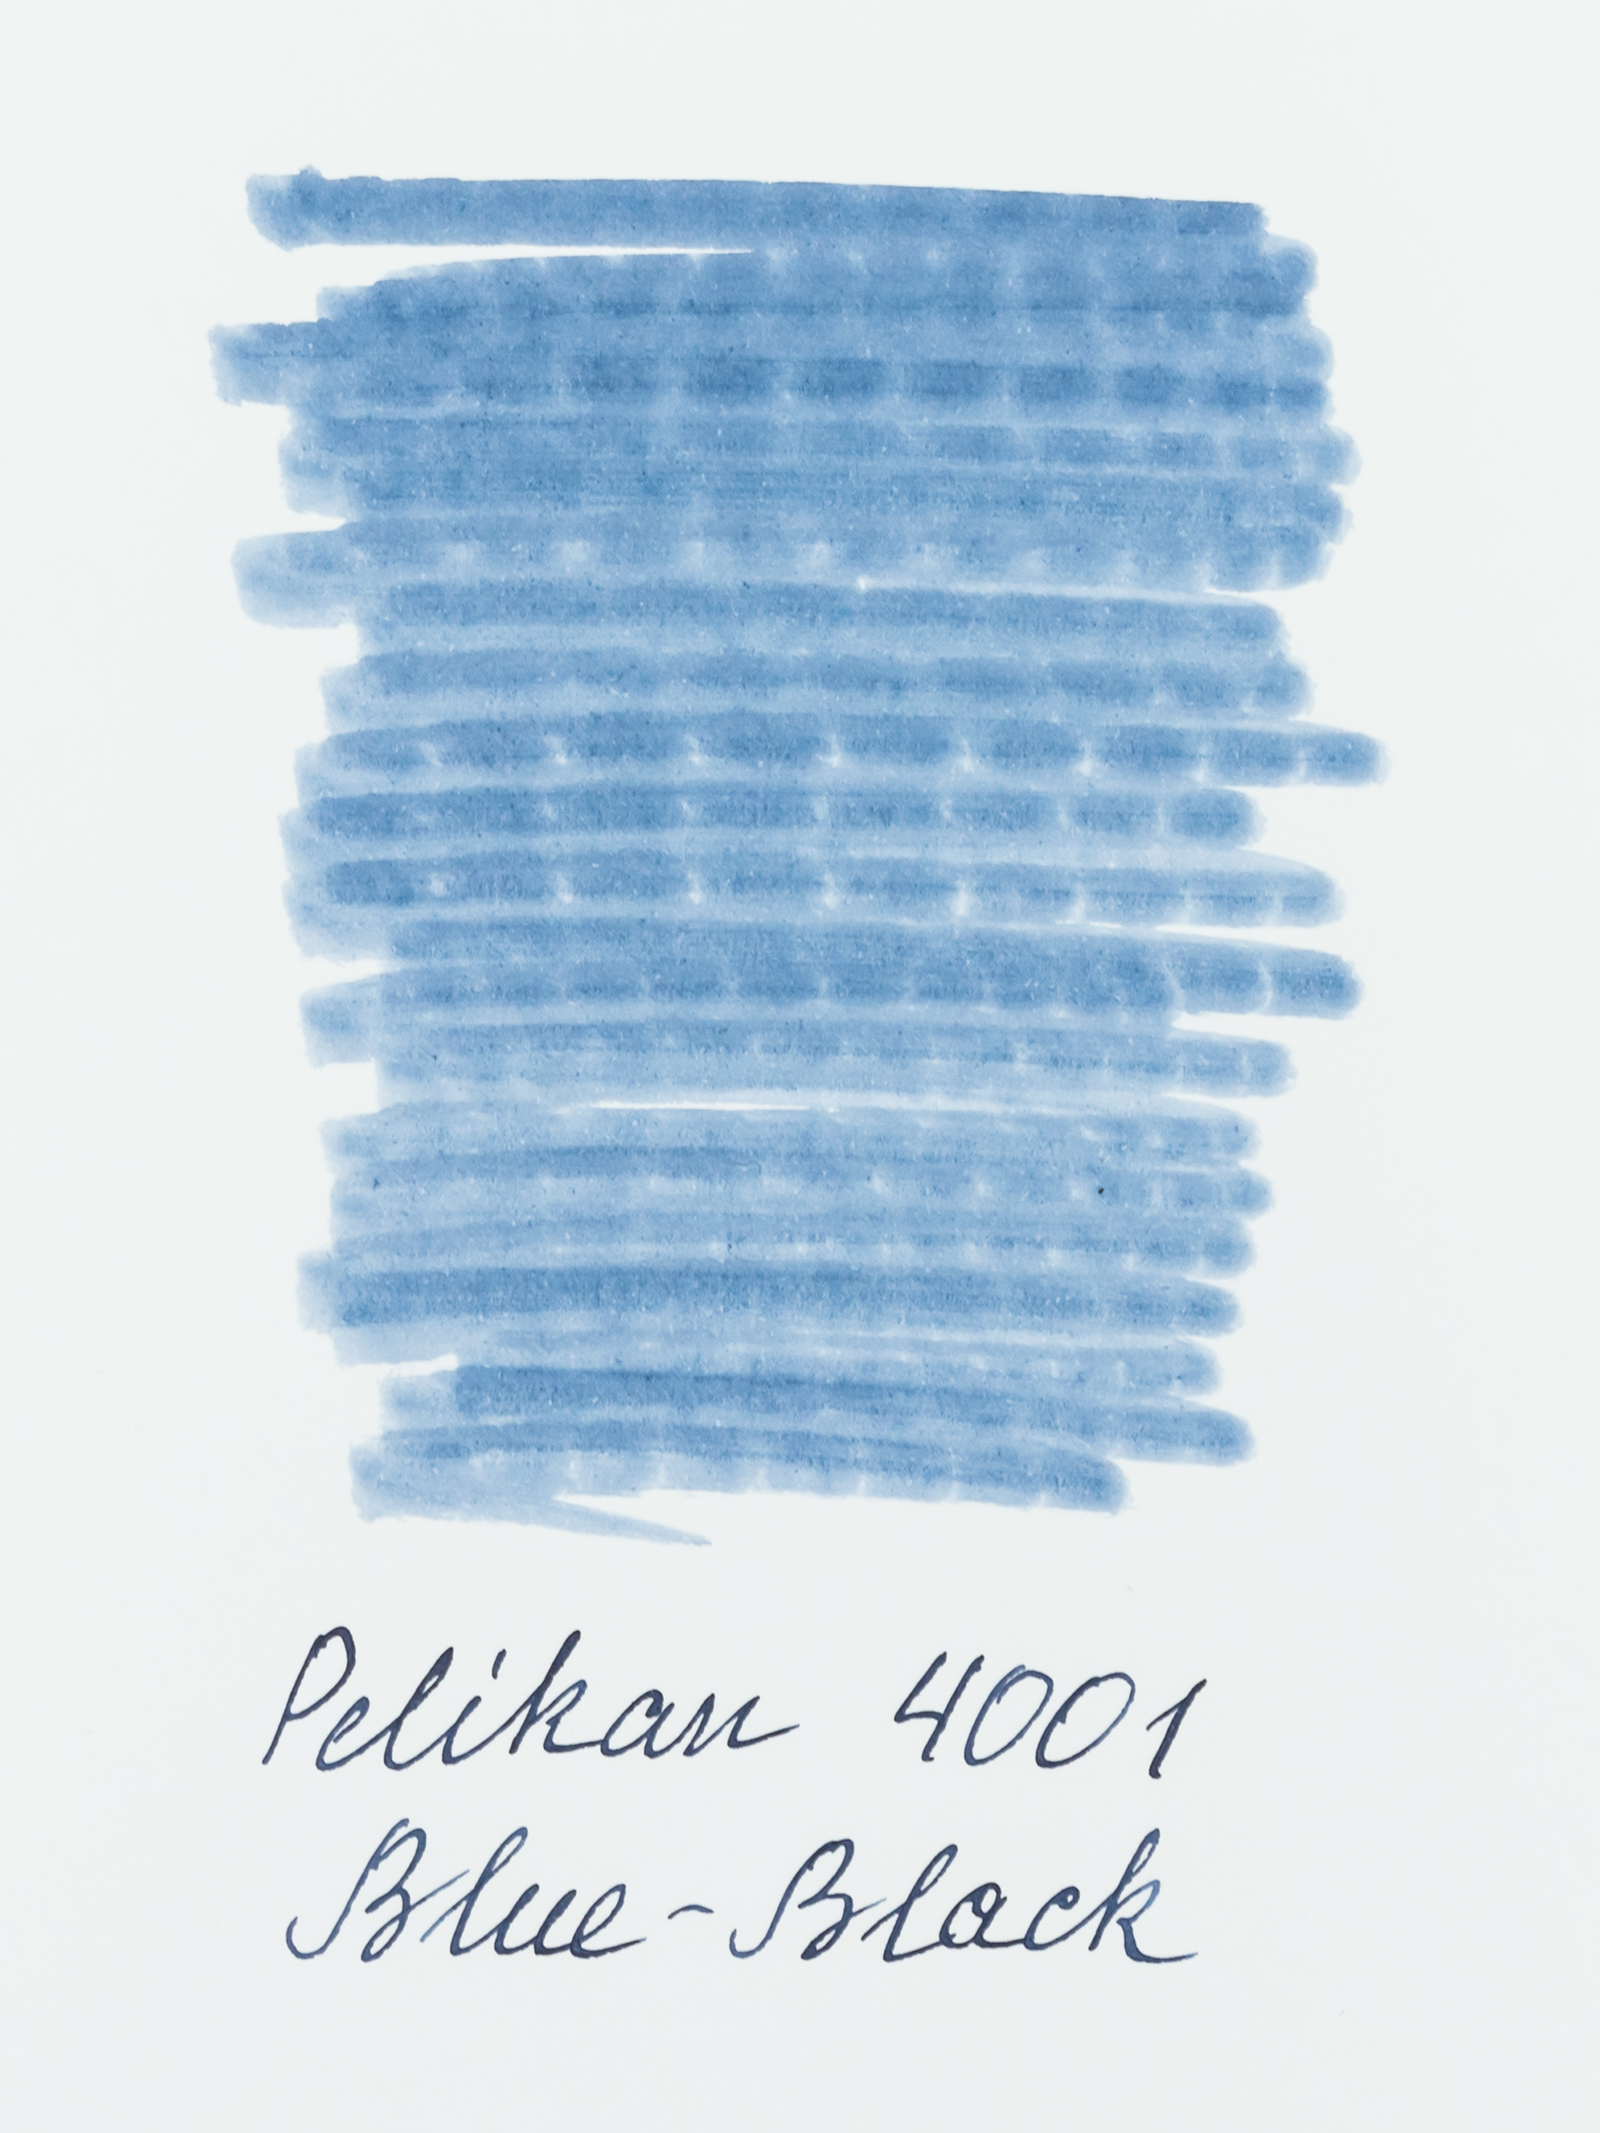 Pelikan 4001 Blue-Black 30ml bottle – Scribe Market